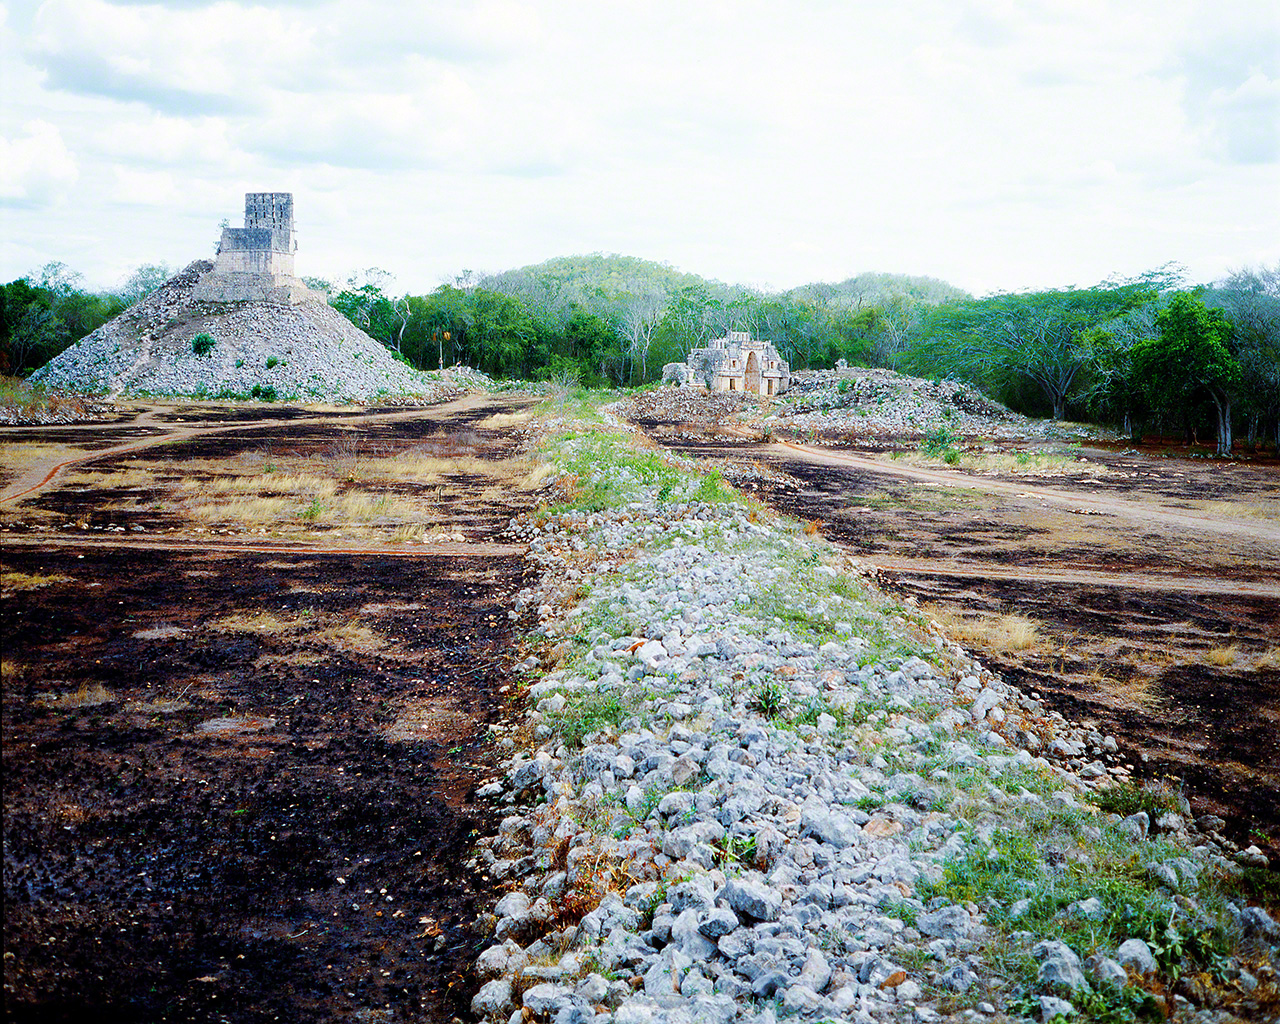 マヤ遺跡の道路を発掘調査していた1981年当時に撮影